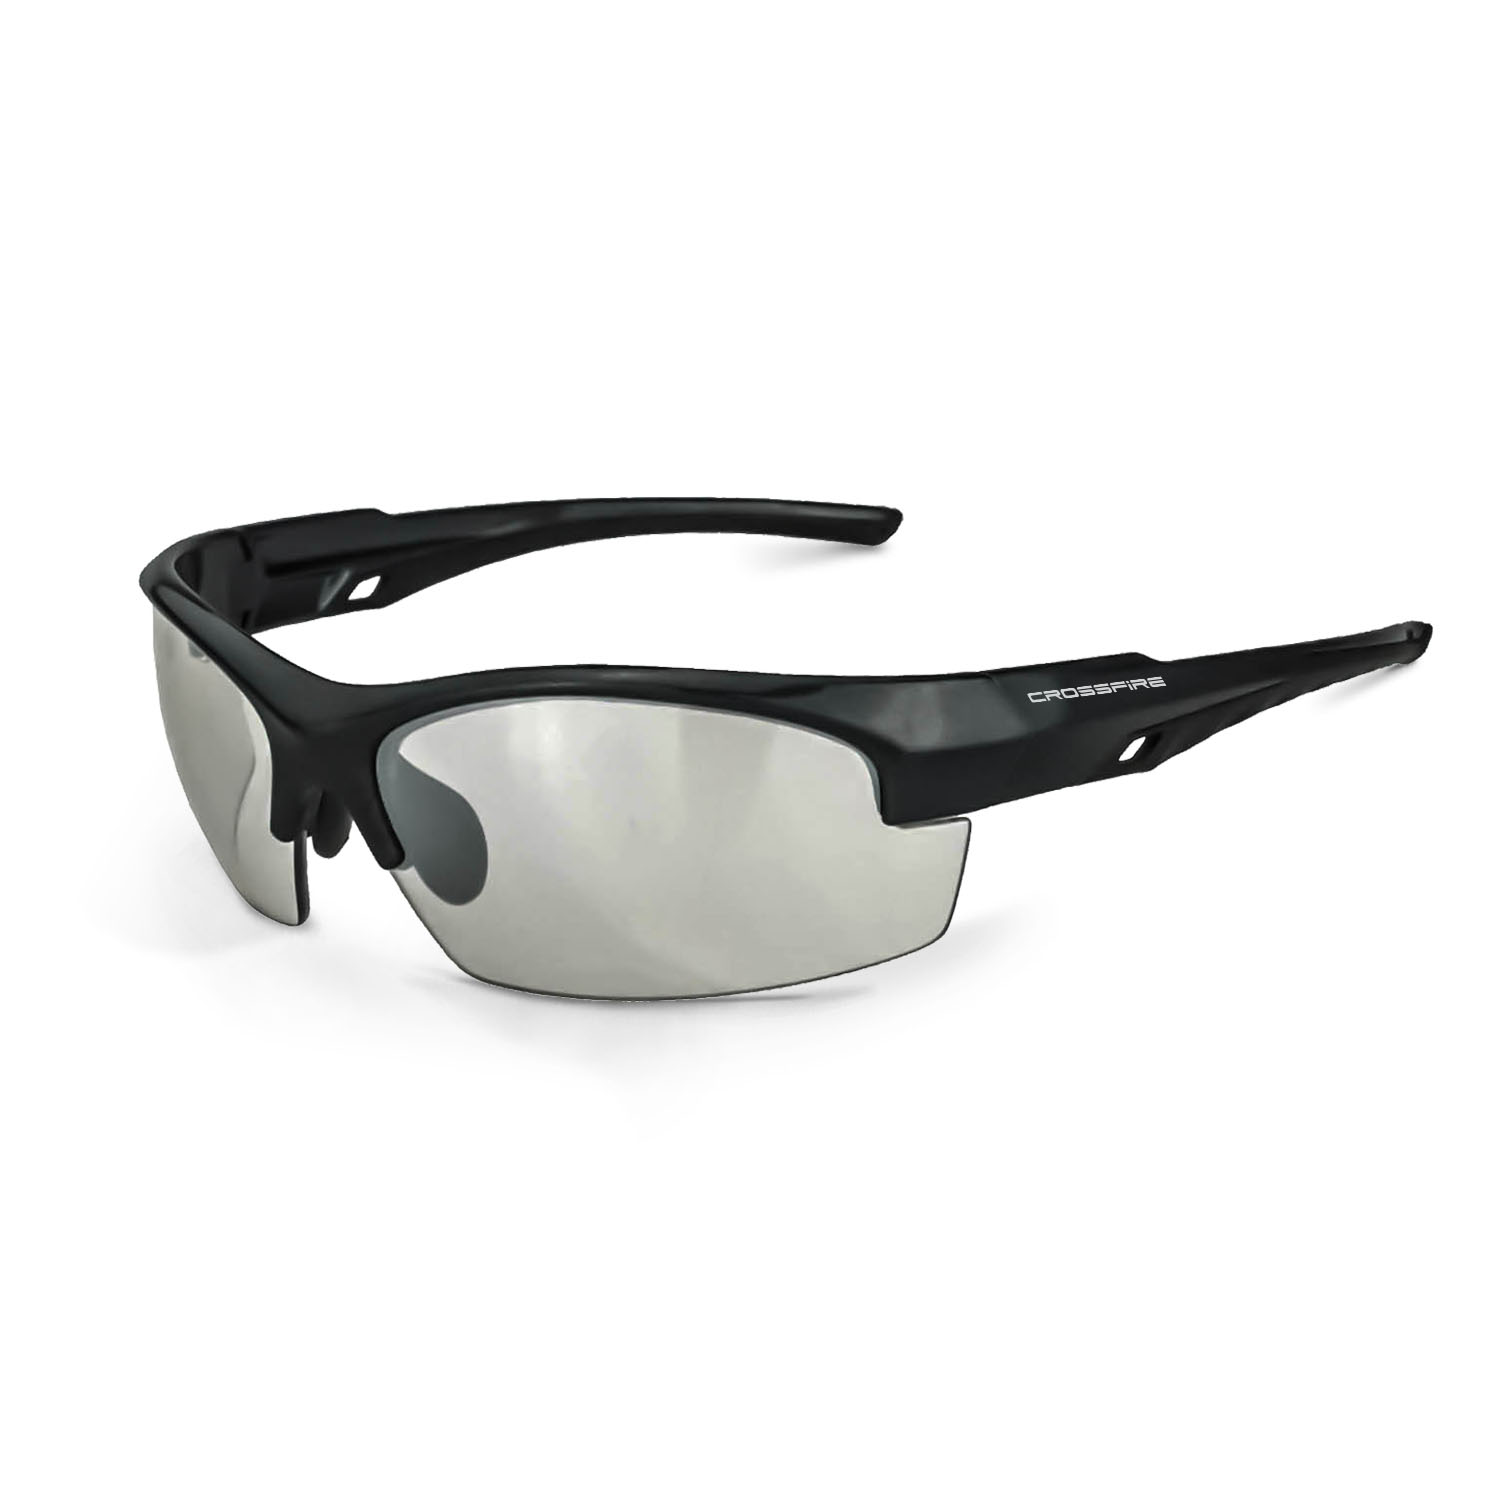 Crucible Premium Safety Eyewear - Shiny Black Frame - Indoor/Outdoor Lens - Indoor/Outdoor Lens